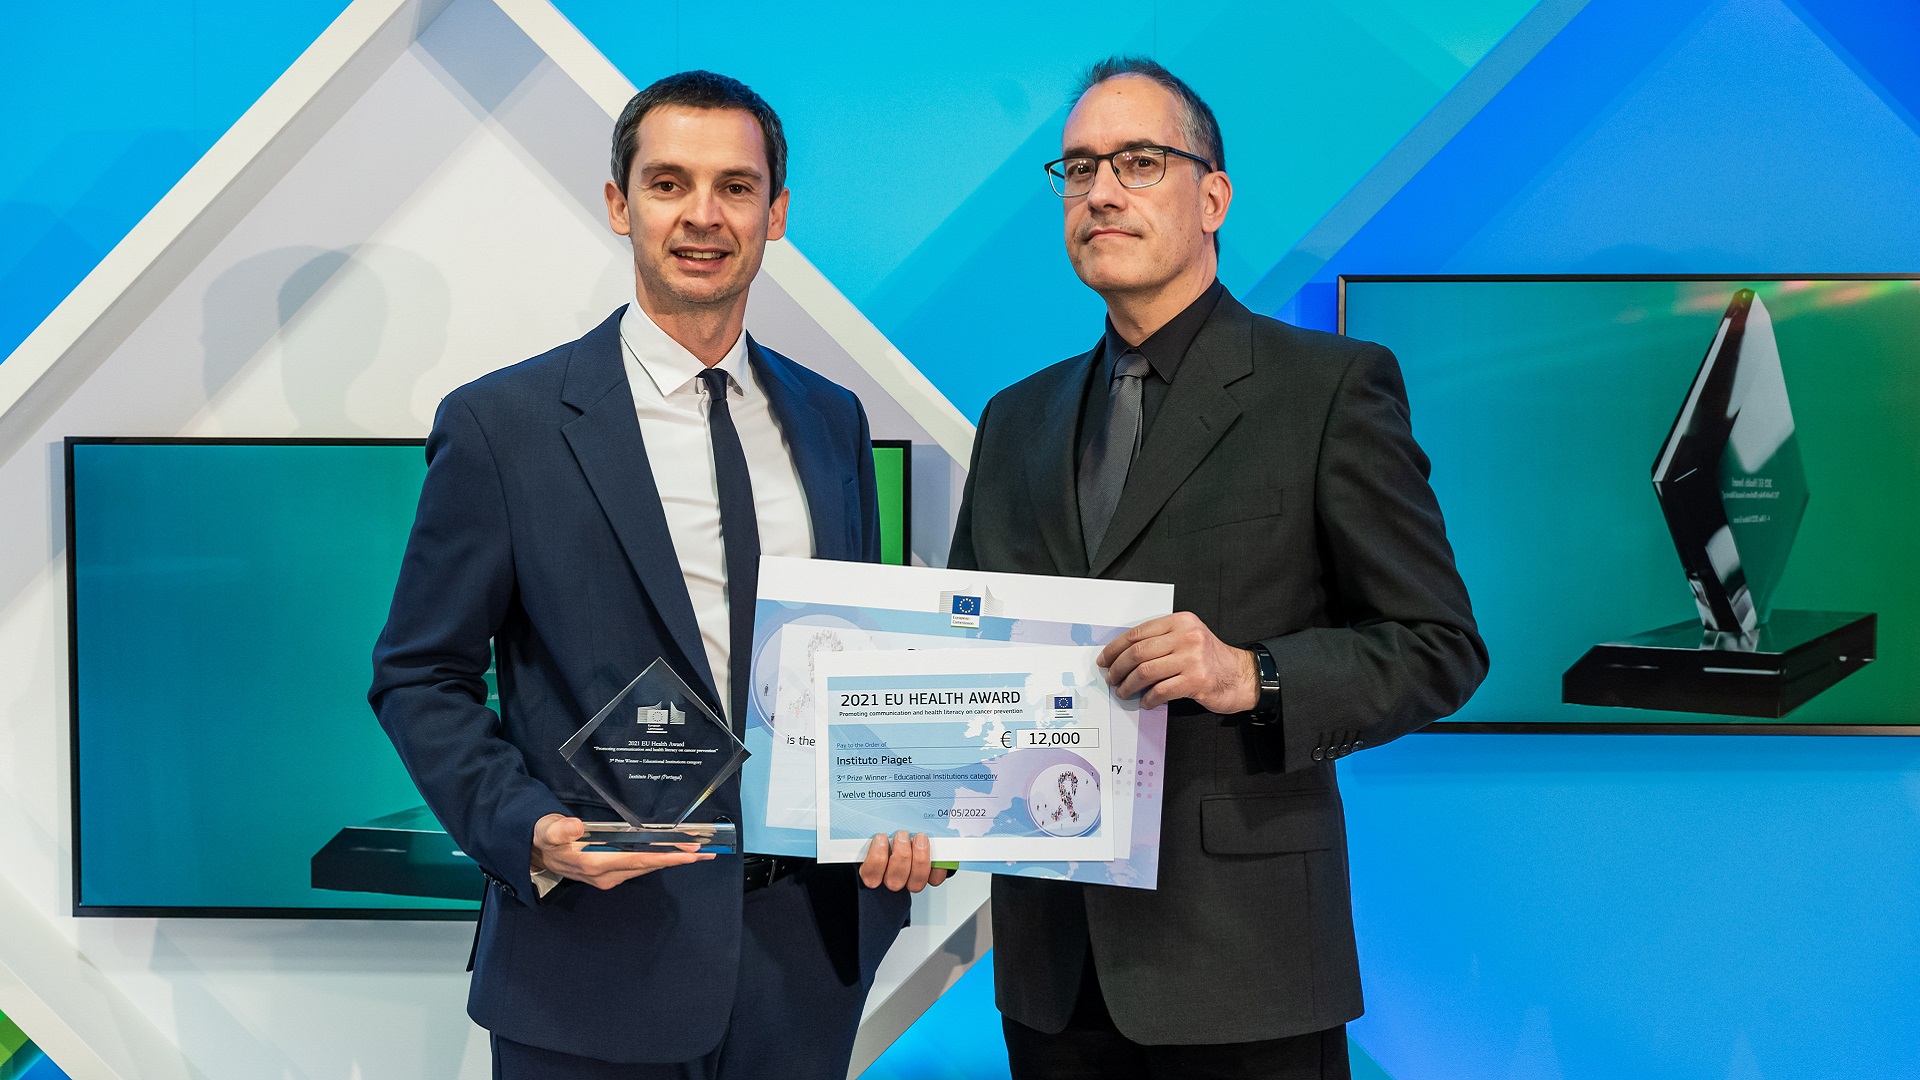 Piaget arrecada 3º prémio europeu de saúde para a prevenção do cancro